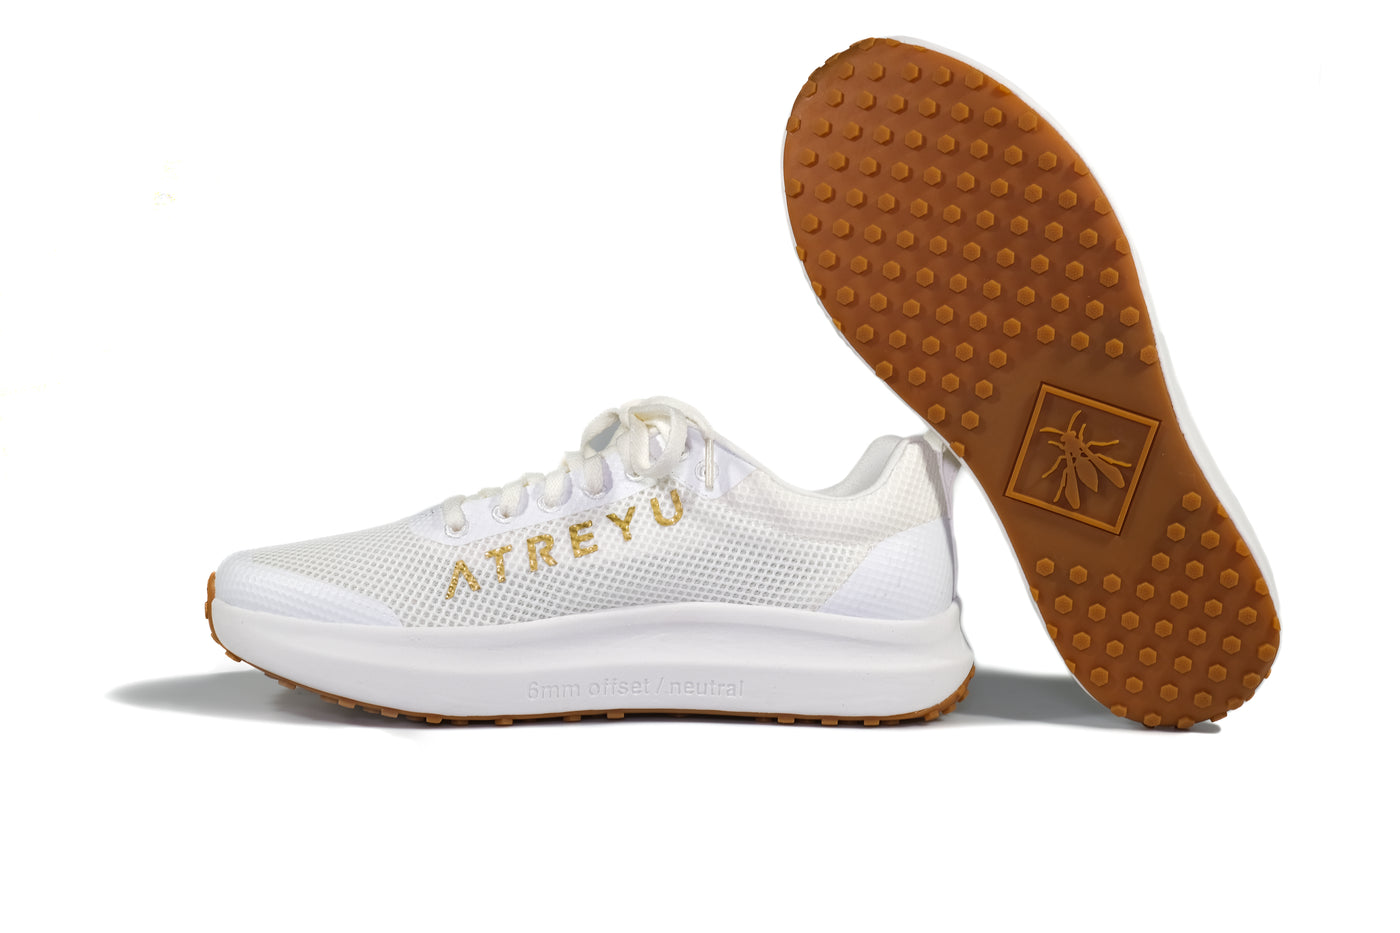 Daily Trainer - Atreyu Running Shoes Pair mix White